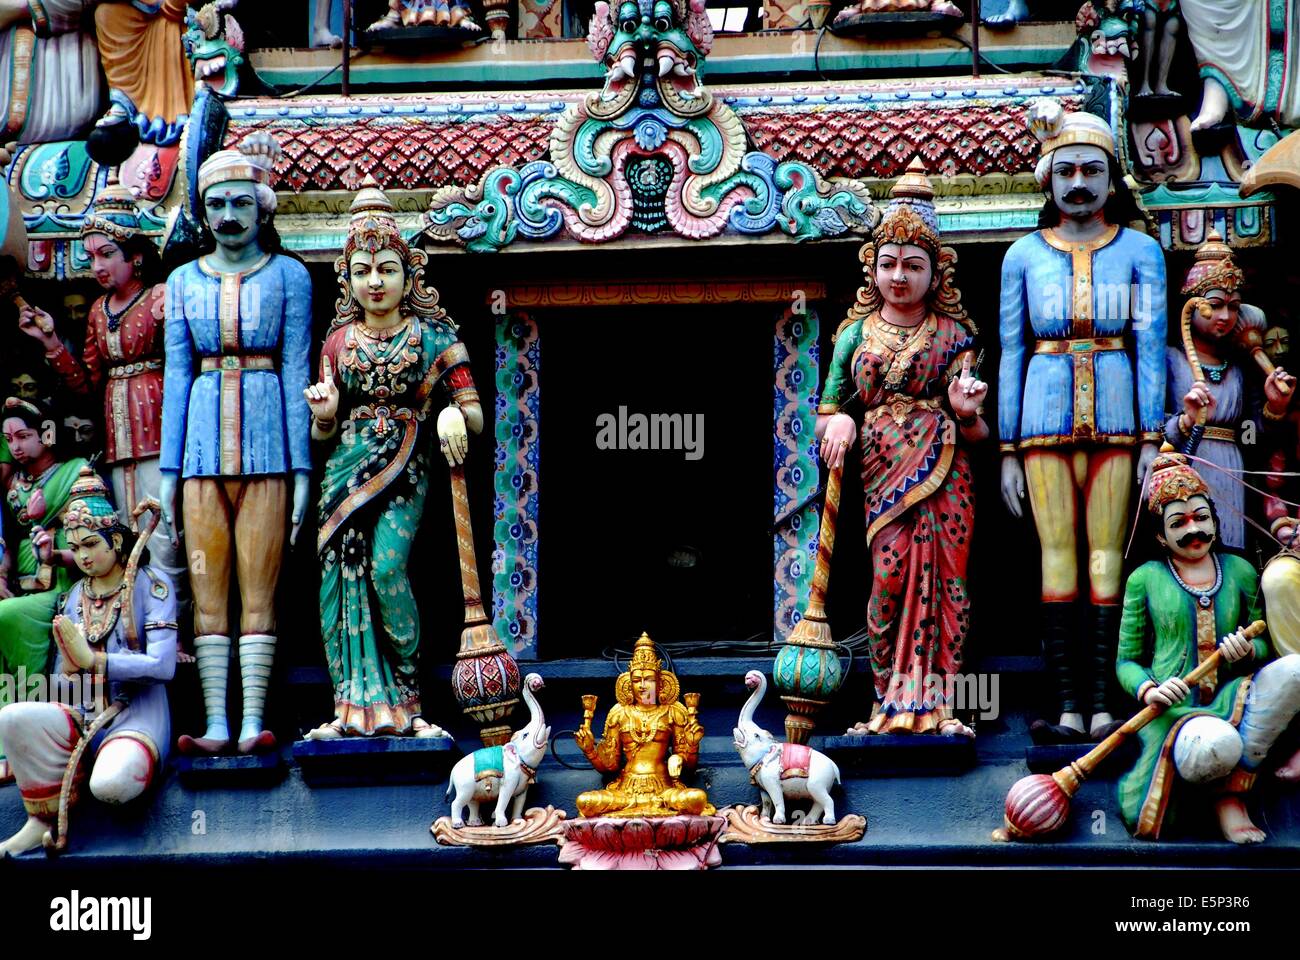 Singapur: Las figuras que adornan la entrada sikhara tower en el 1827 Sri Mariamman templo hindú en Chinatown Foto de stock